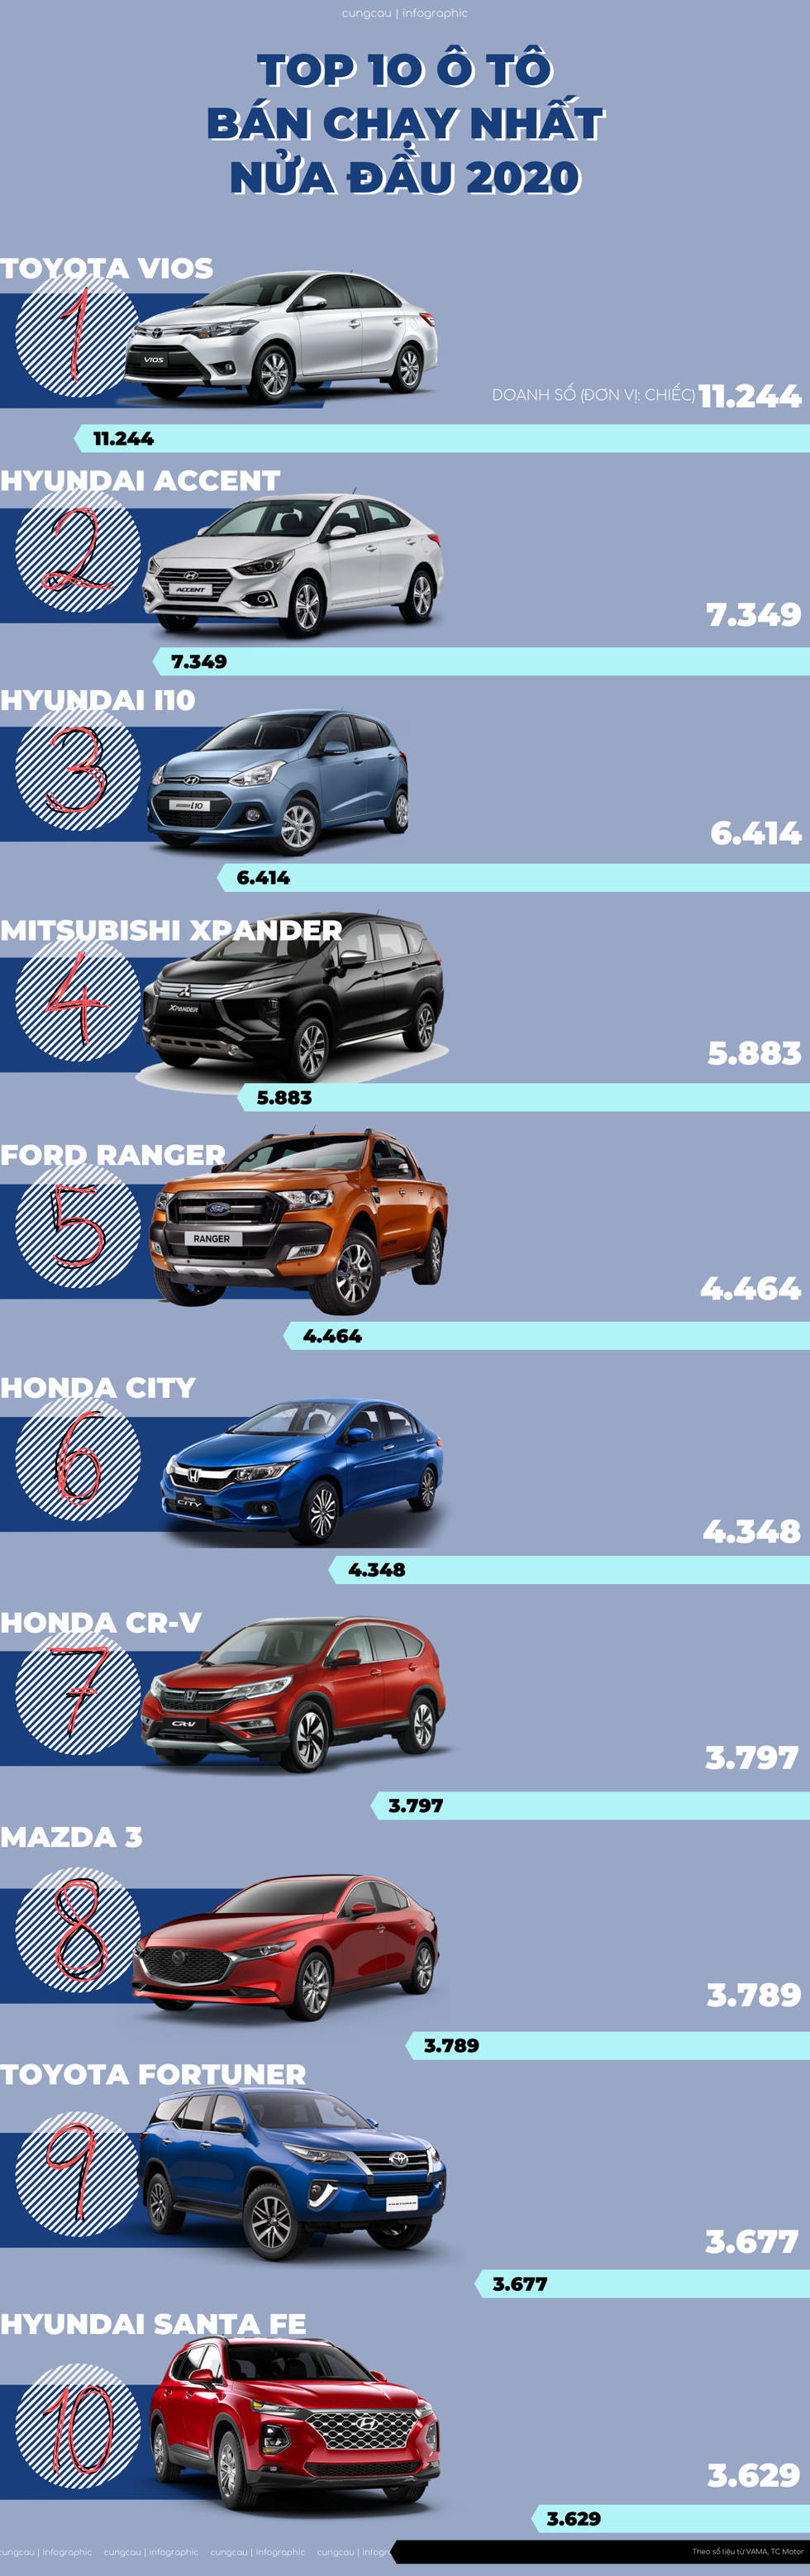 Mẫu ô tô nào bán chạy nhất trong 6 tháng đầu năm 2020?